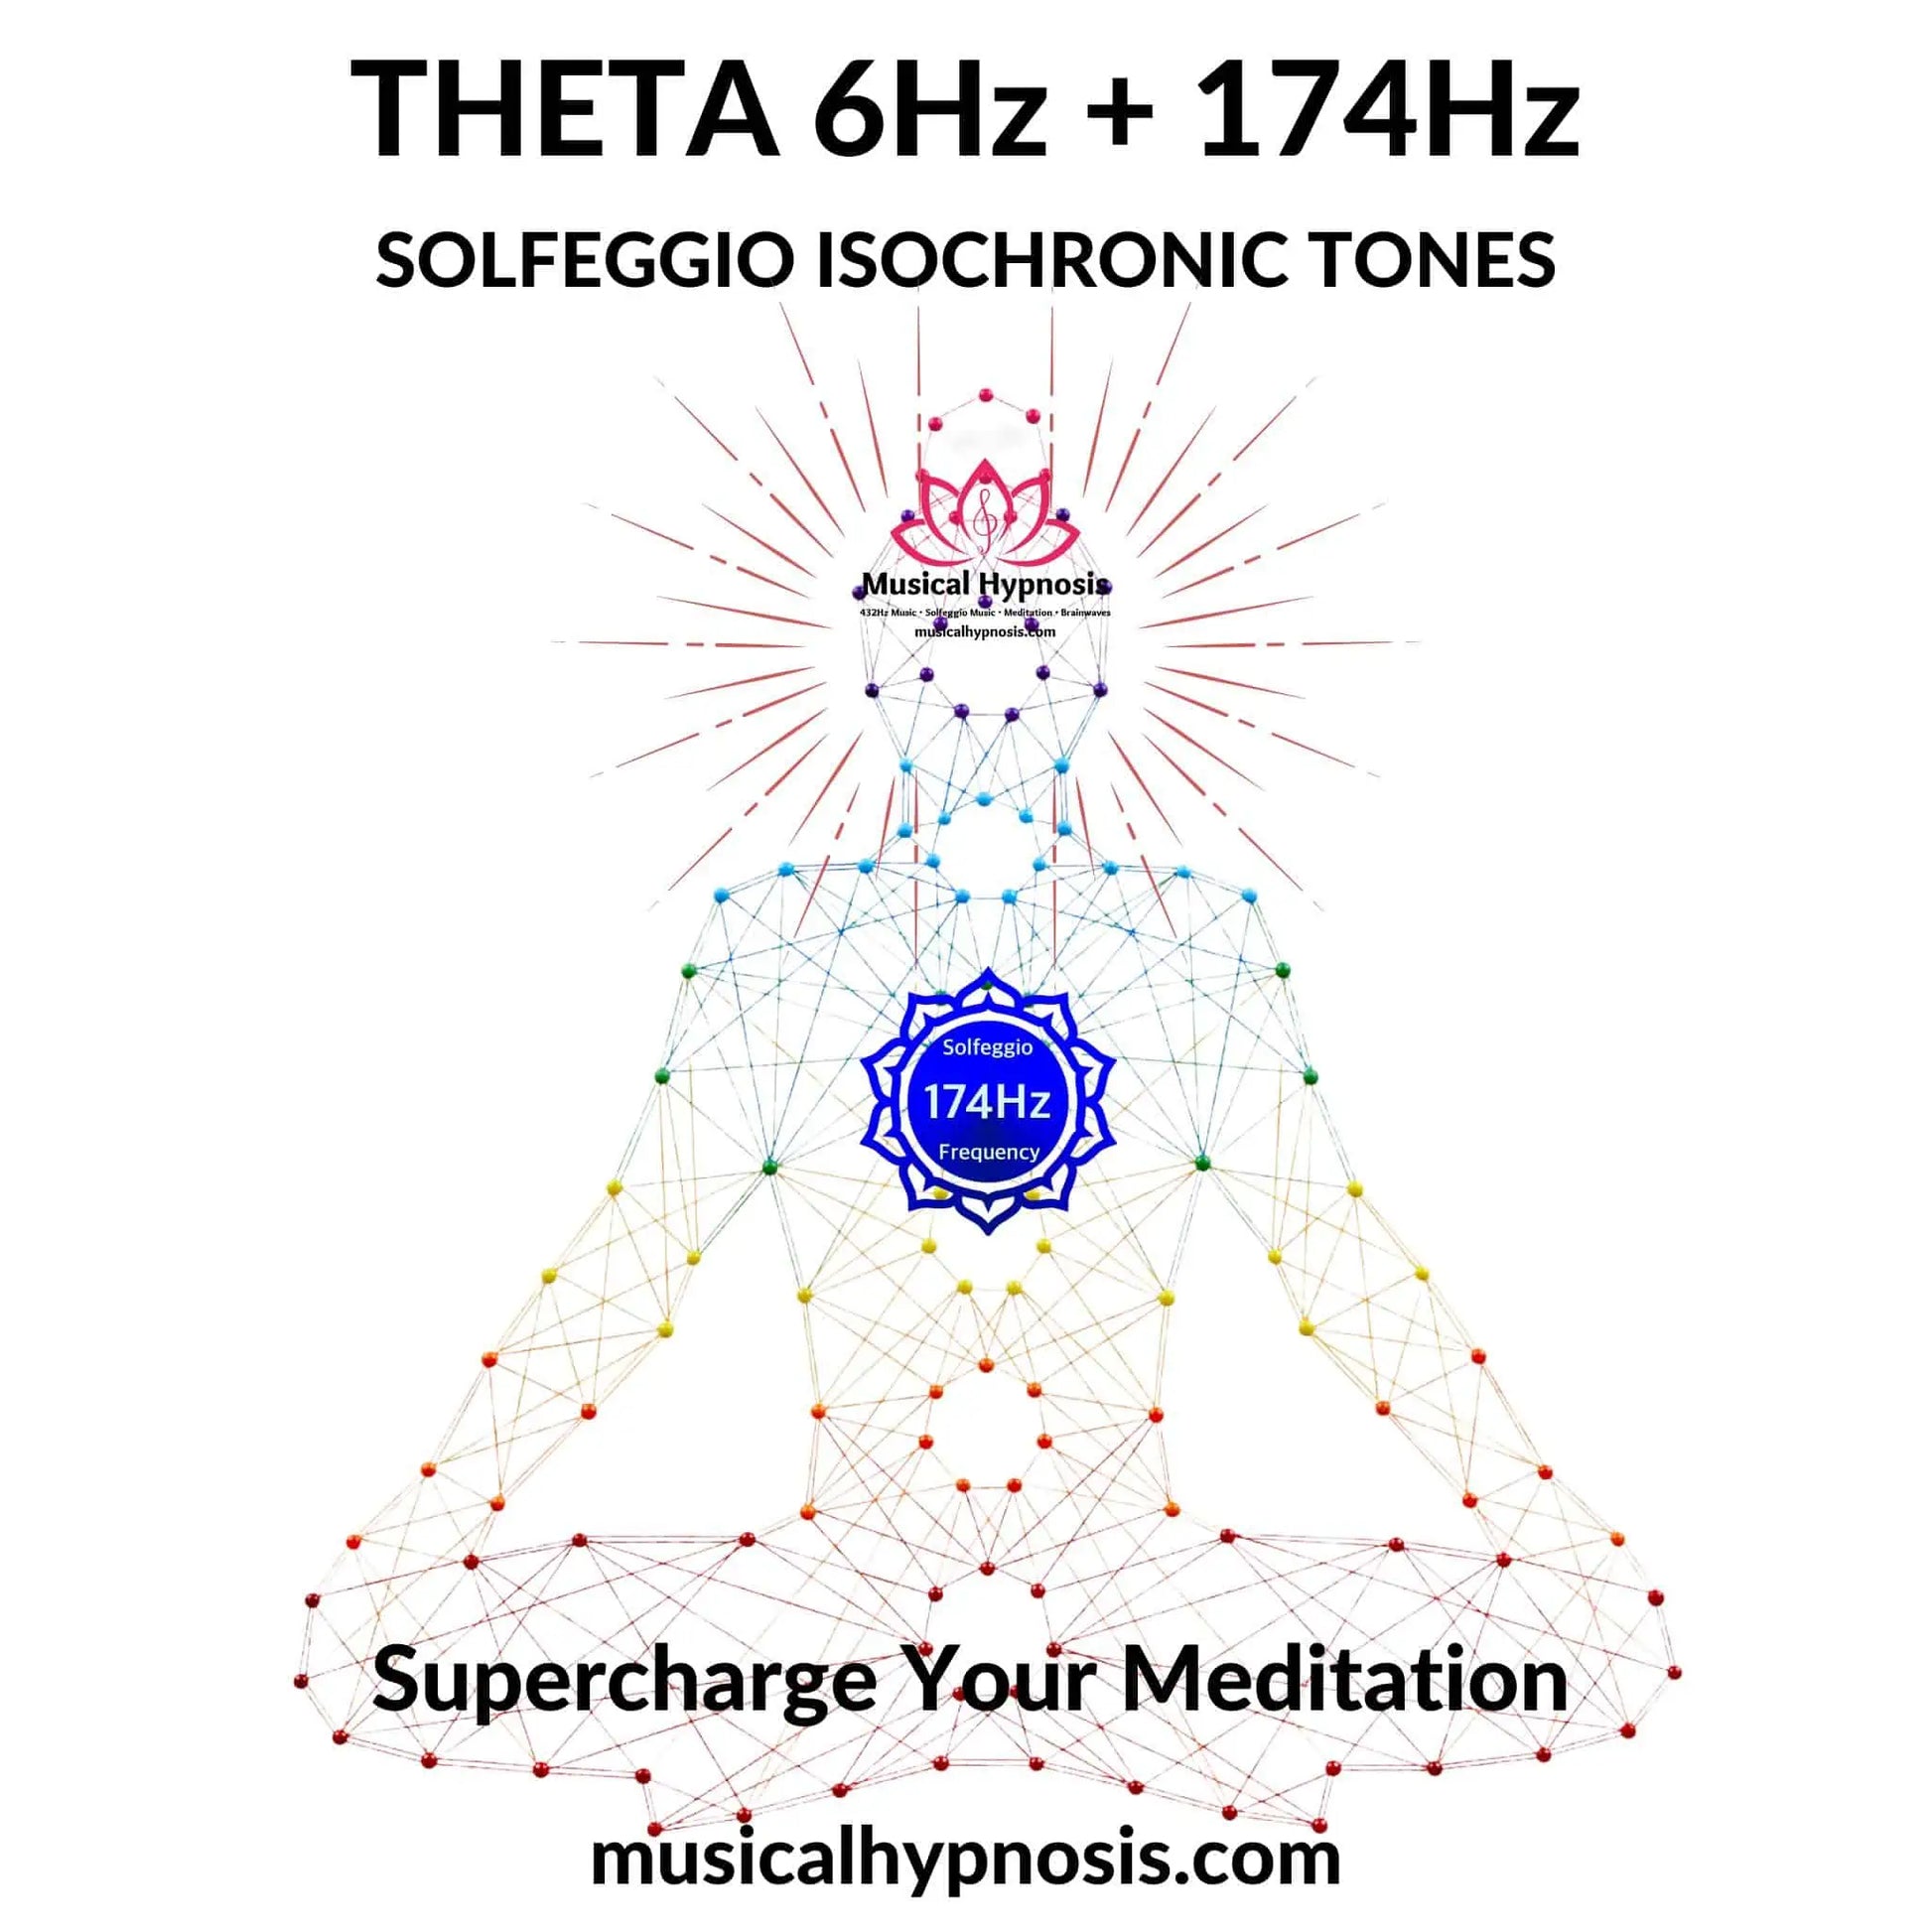 Theta 6Hz and 174Hz Solfeggio Isochronic Tones | 30 minutes